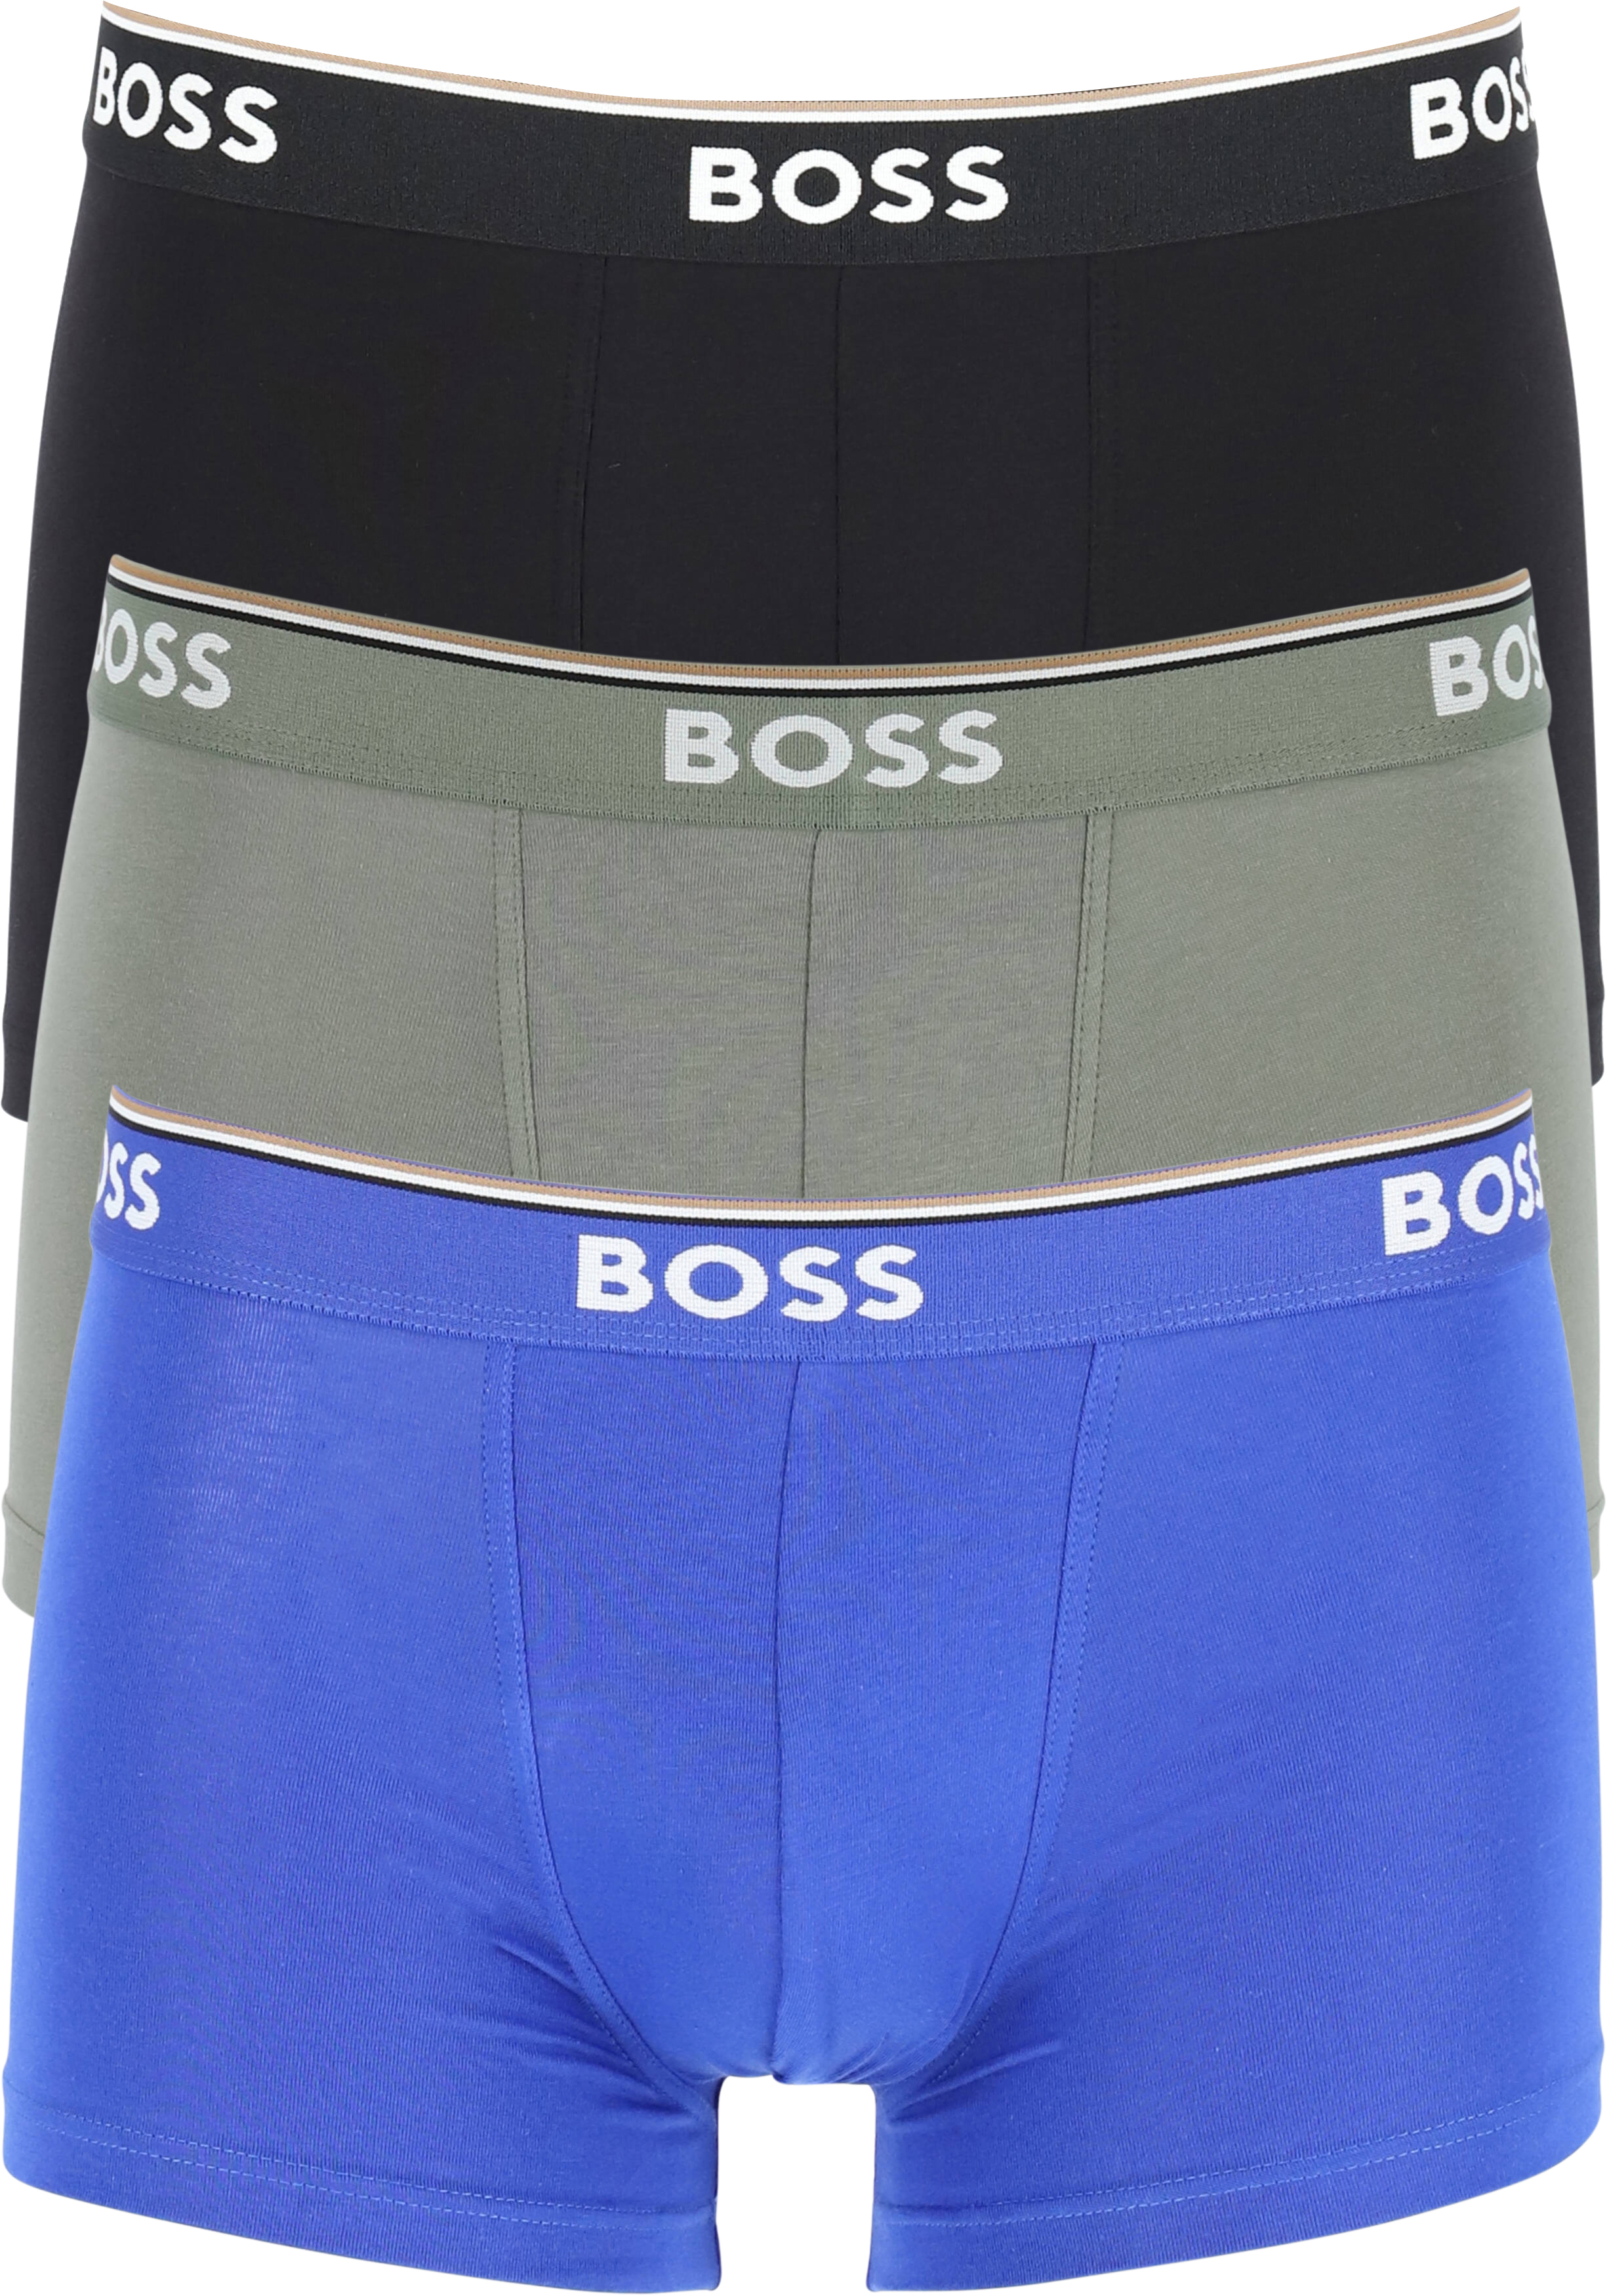 HUGO BOSS Power trunks (3-pack), heren boxers kort, groen, zwart, blauw